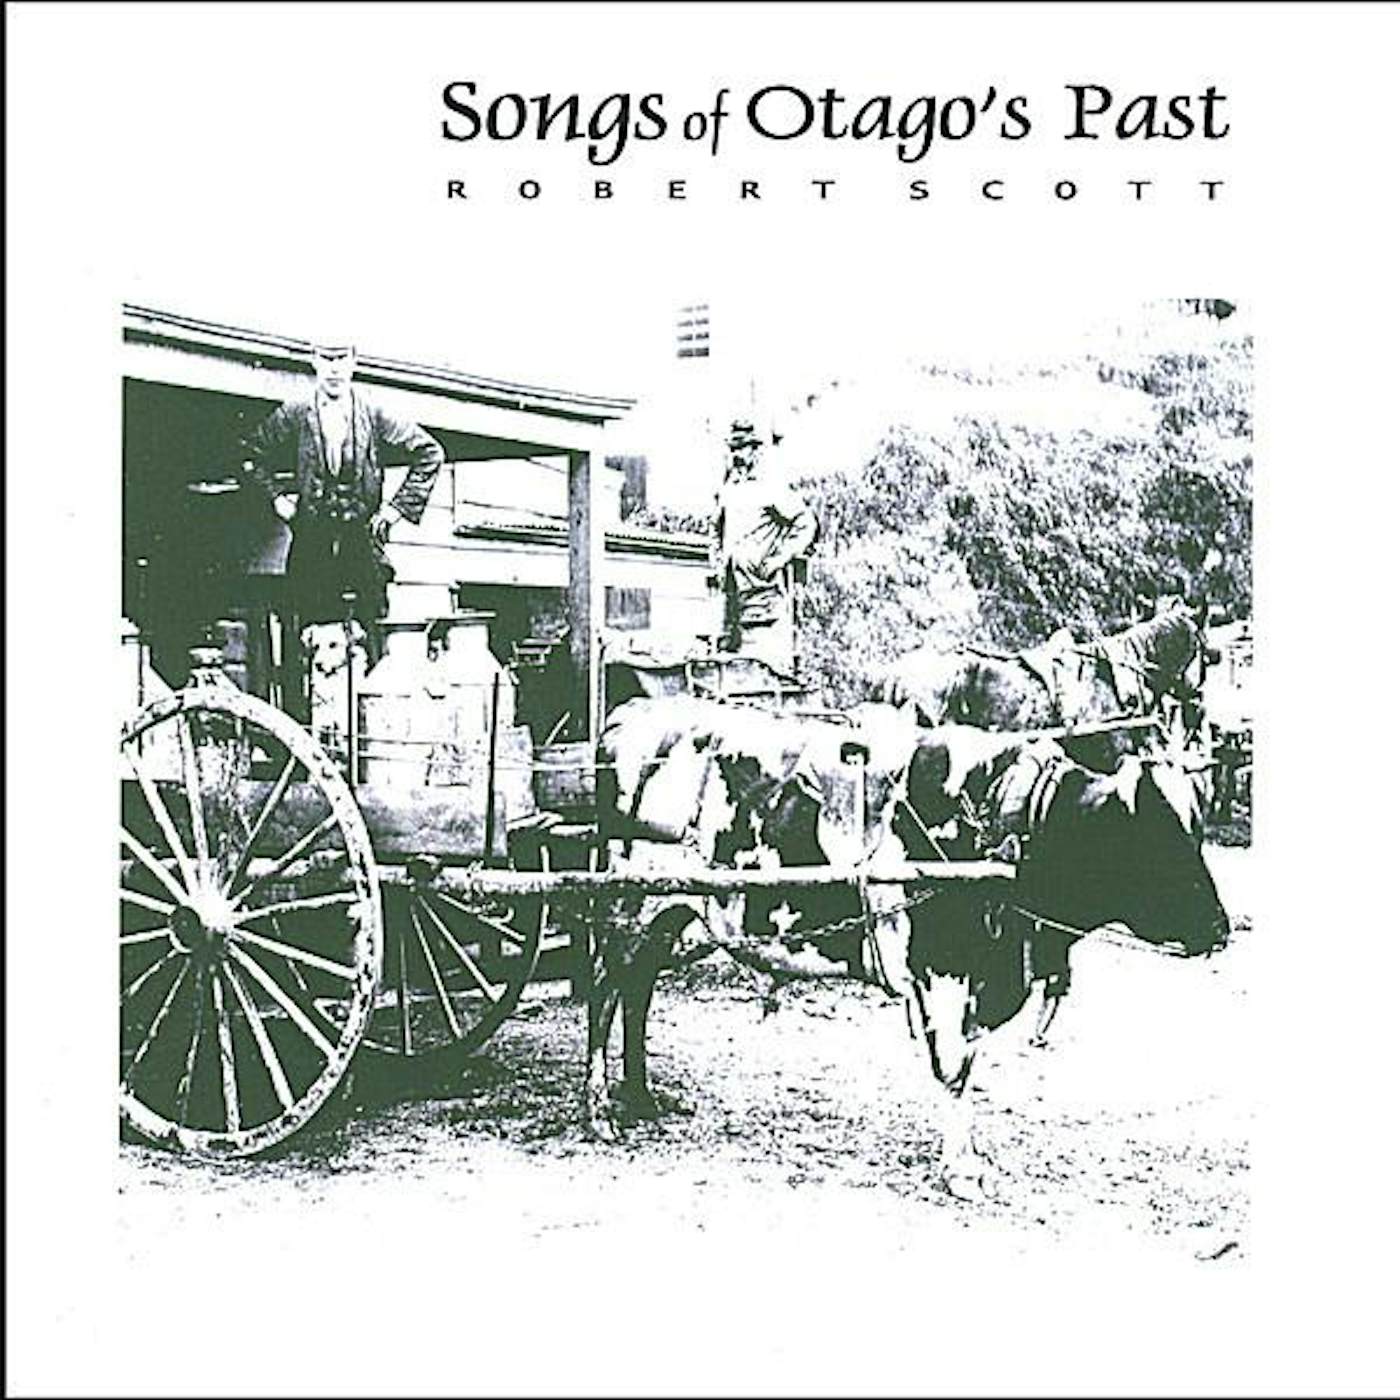 Robert Scott SONGS OF OTAGO'S PAST CD